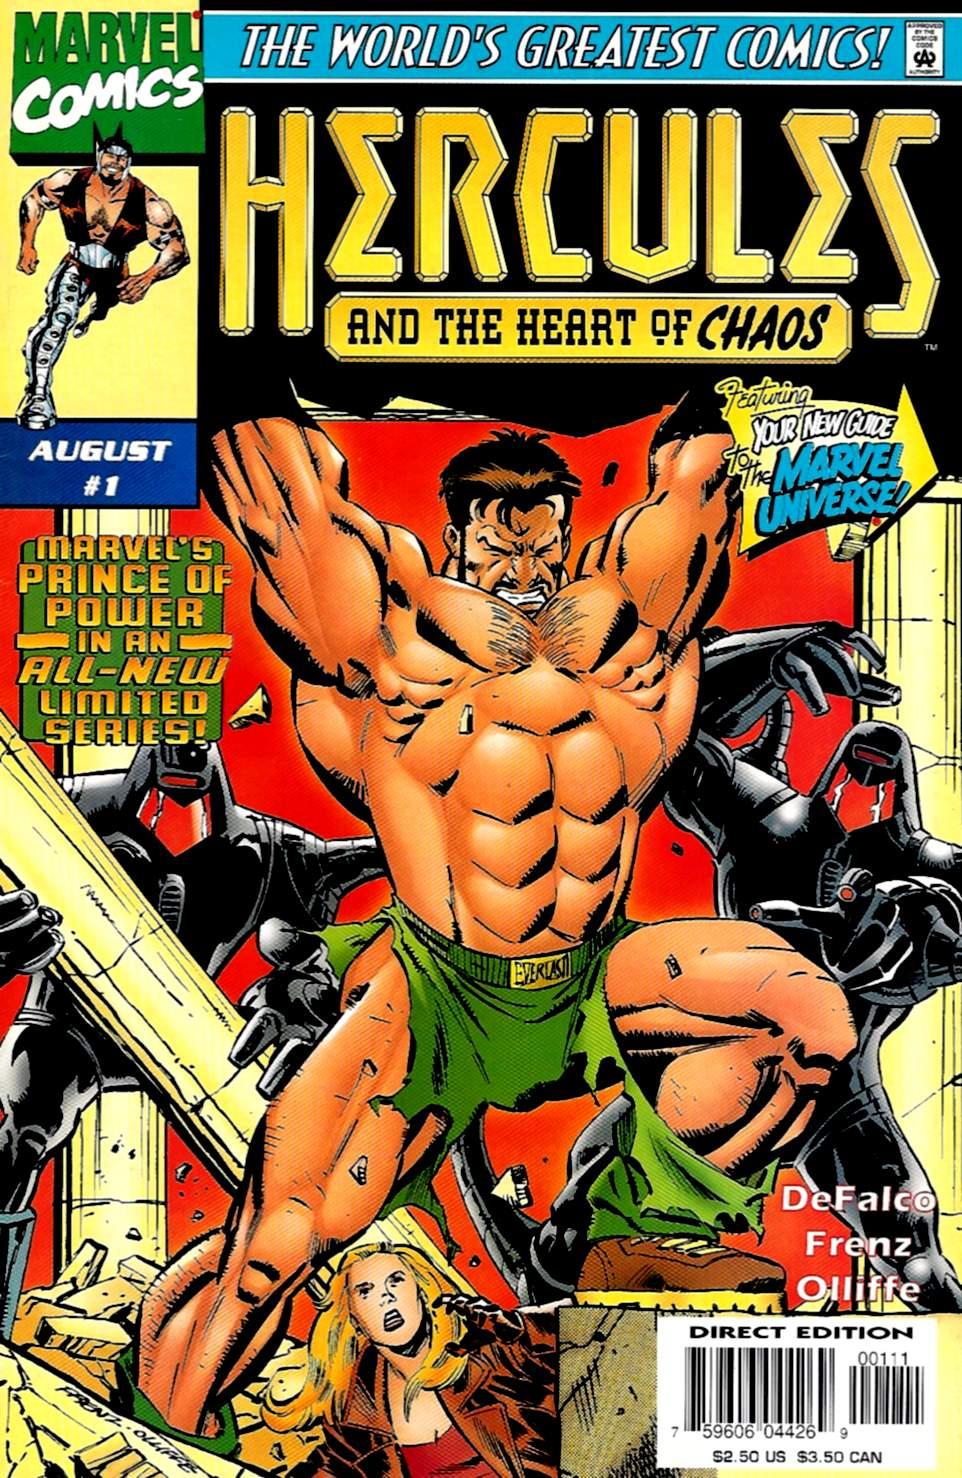 Hercules: Heart of Chaos Vol. 1 #1